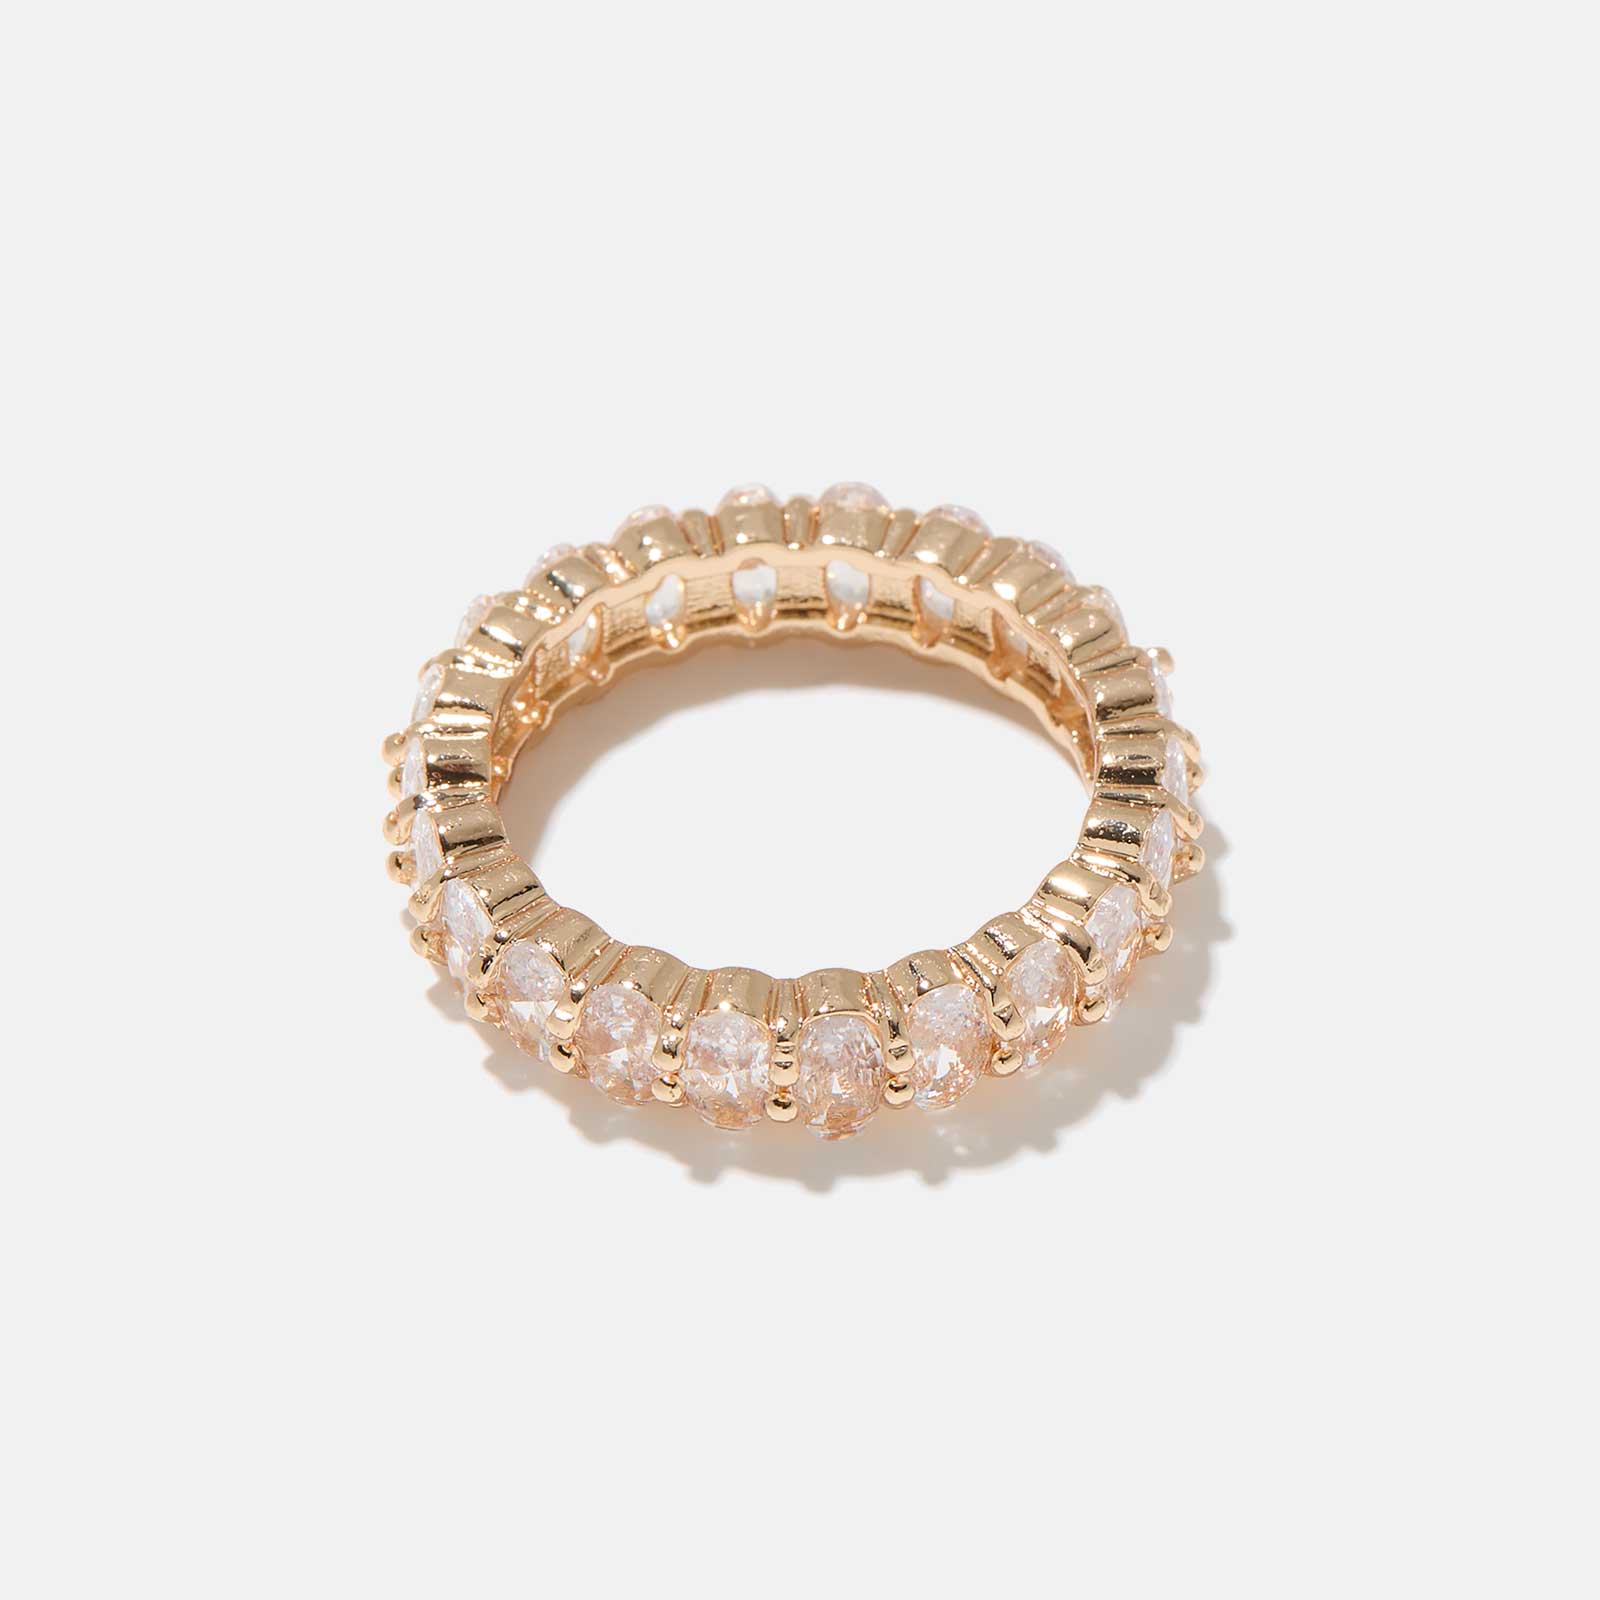 Guldfärgad ring fylld med vita stenar